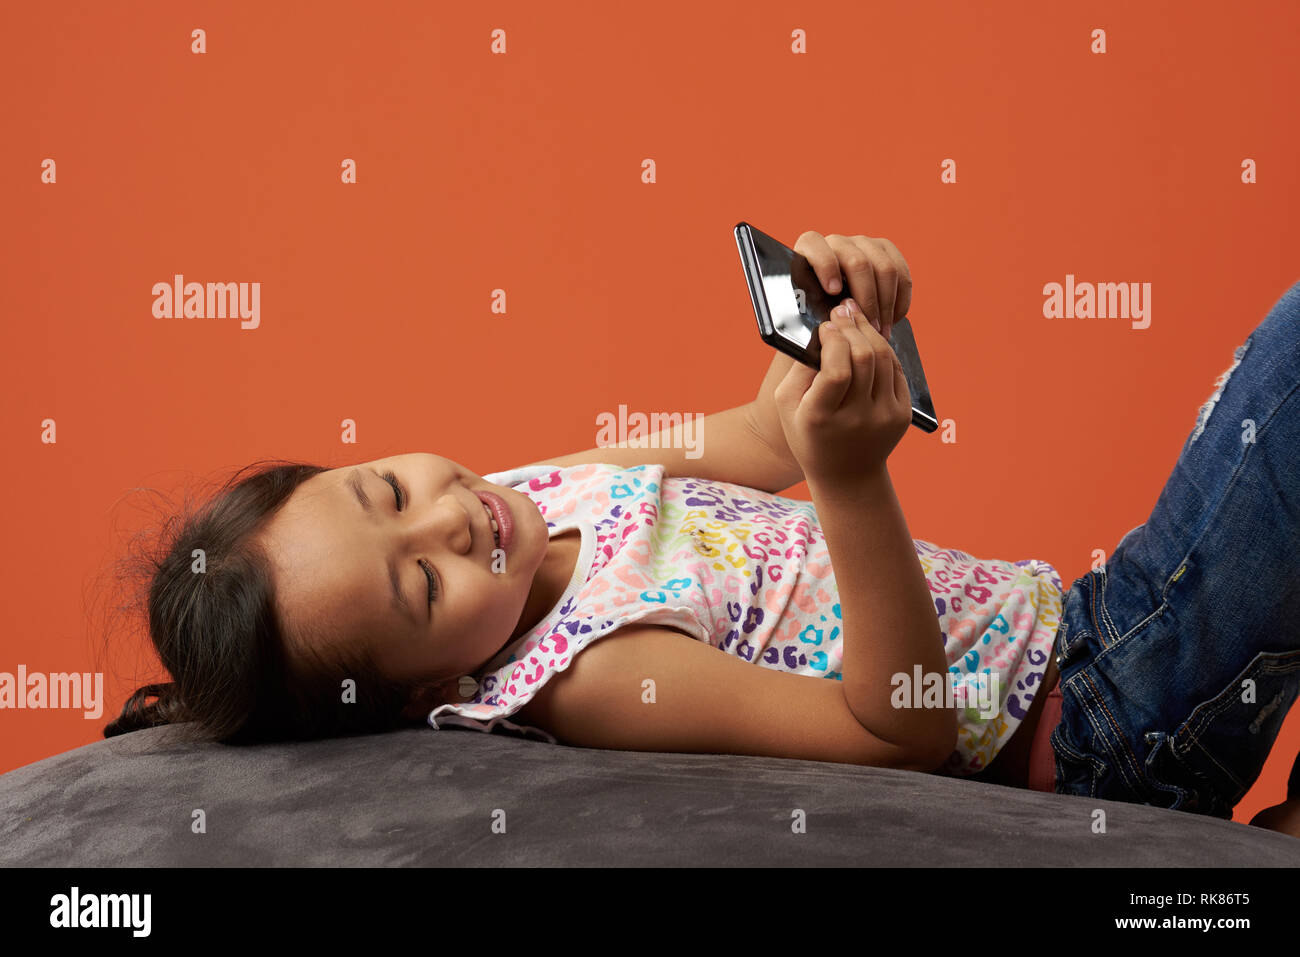 Kind lächelnd auf einem Sitzsack holding Telefon. Asiatische Mädchen, dass Handy und glücklich zu sein. Stockfoto